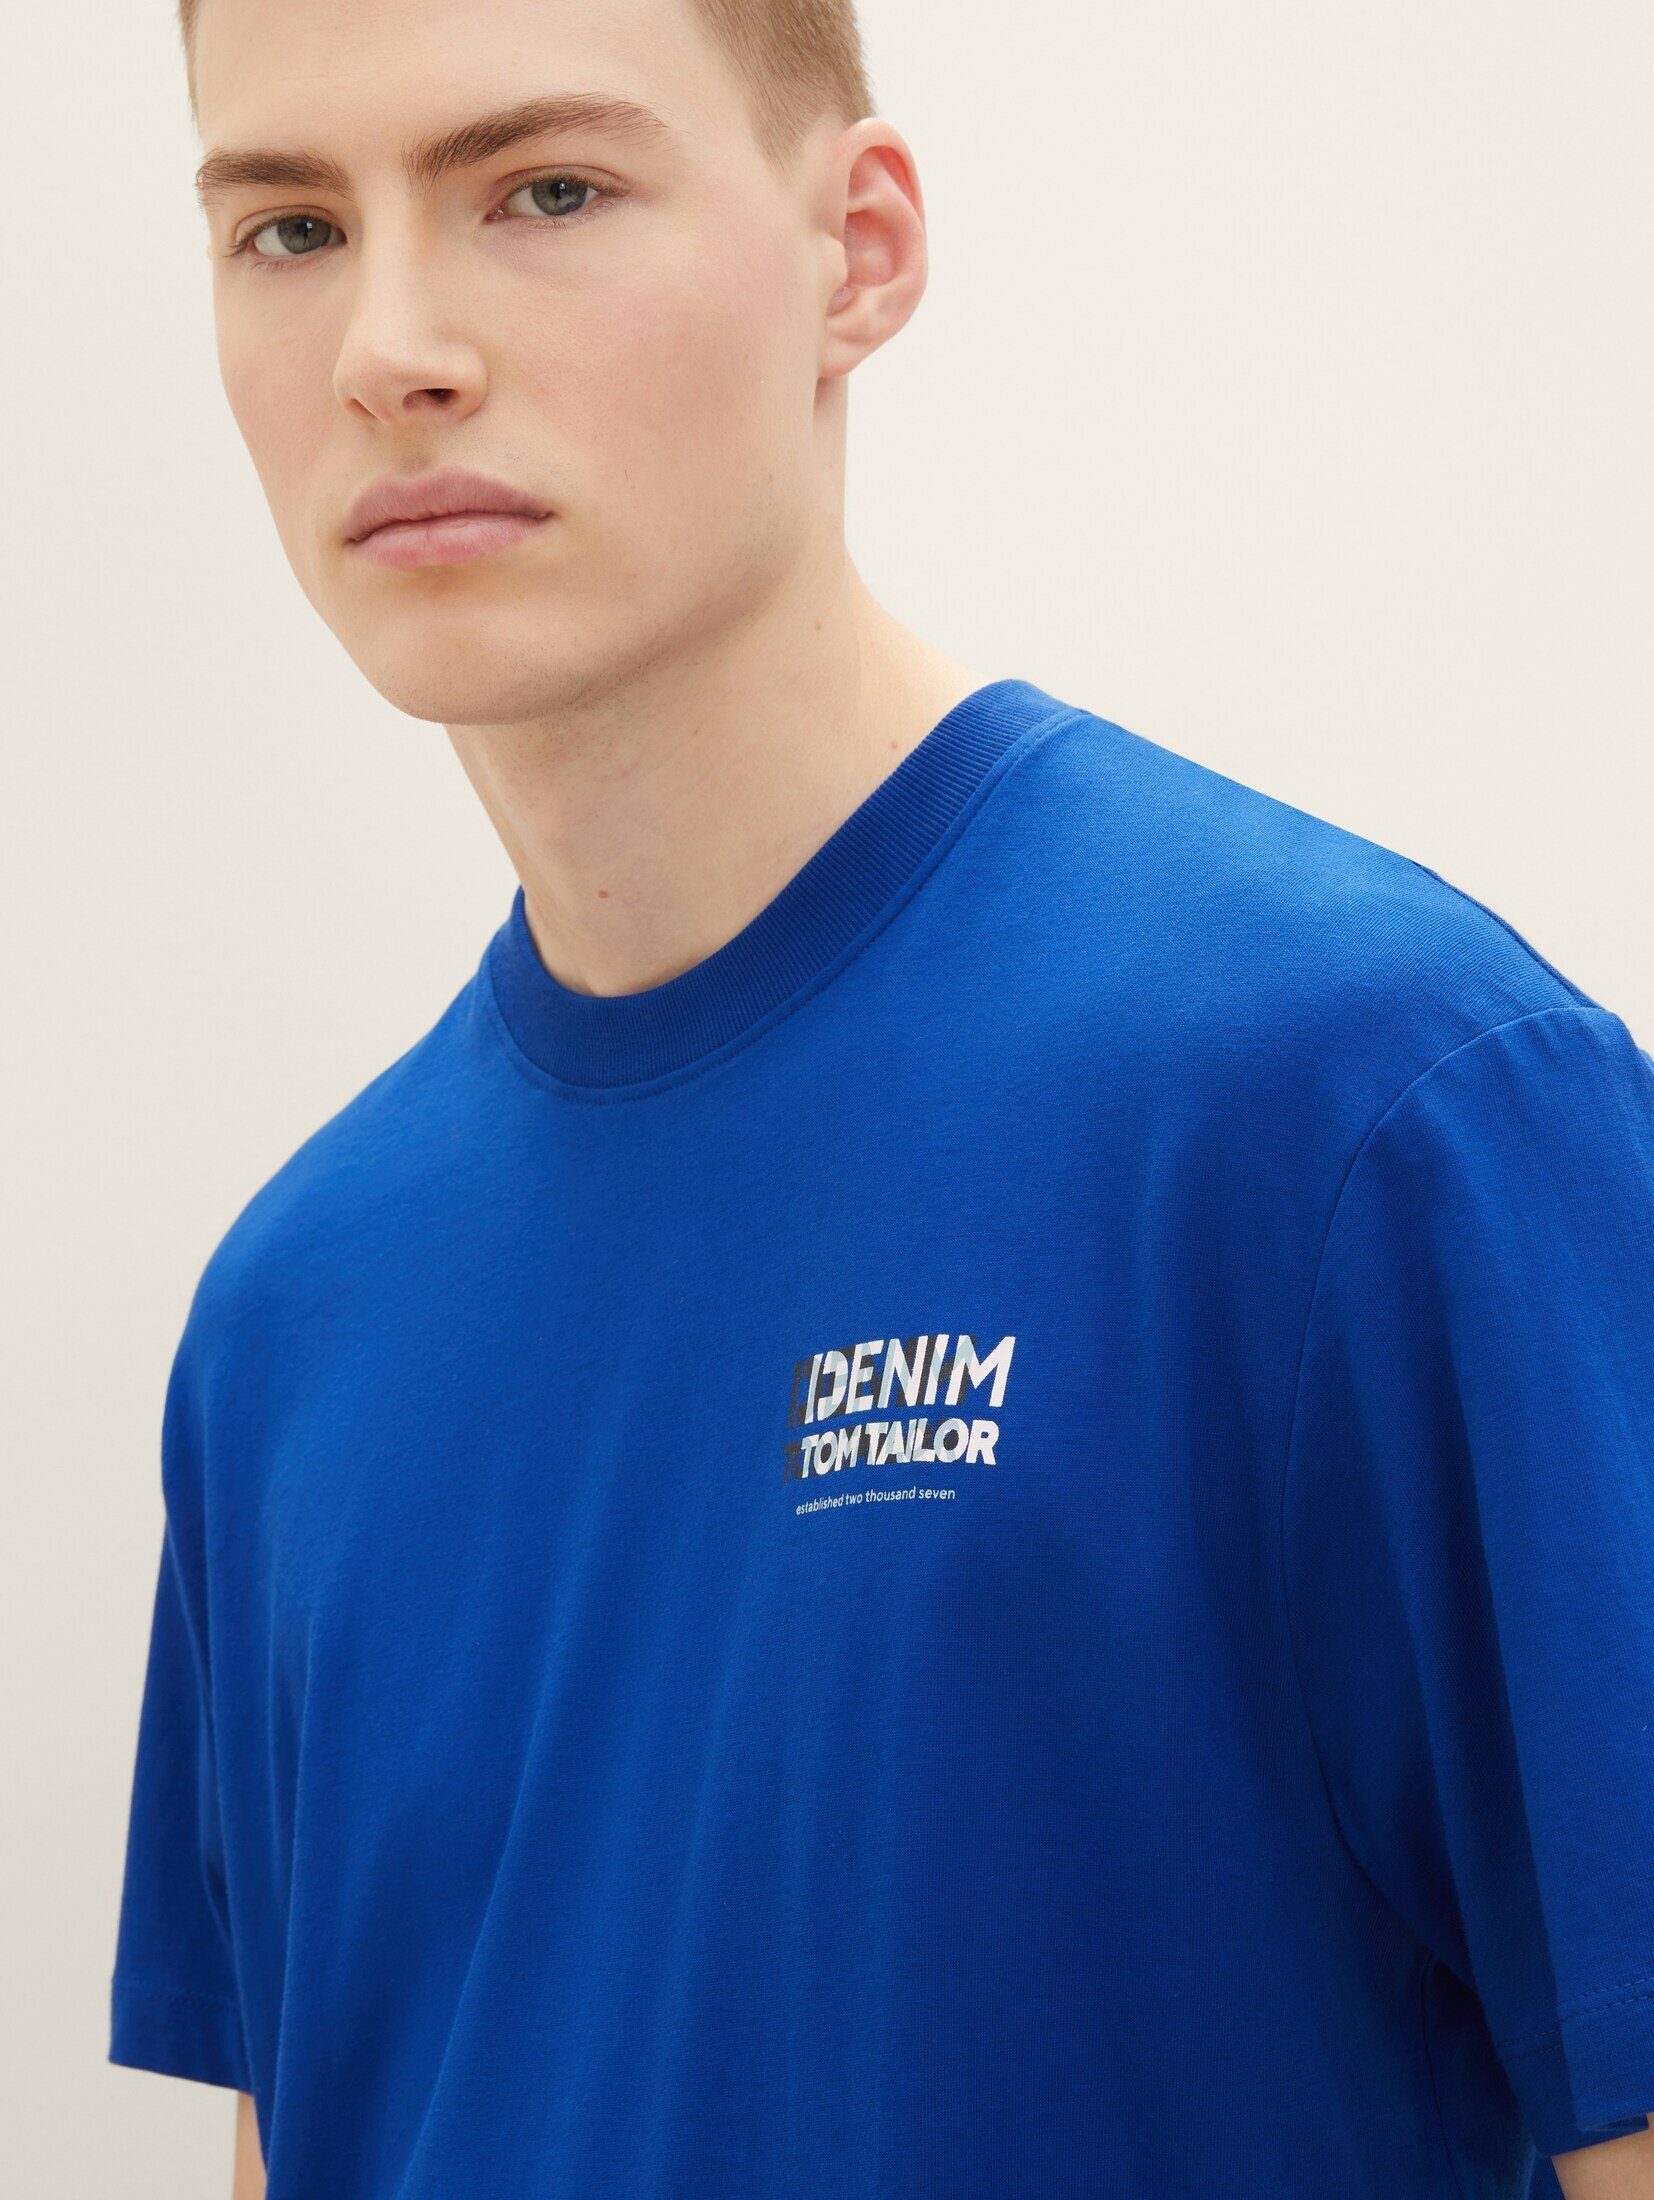 TAILOR mit shiny blue T-Shirt Bio-Baumwolle T-Shirt TOM royal Denim